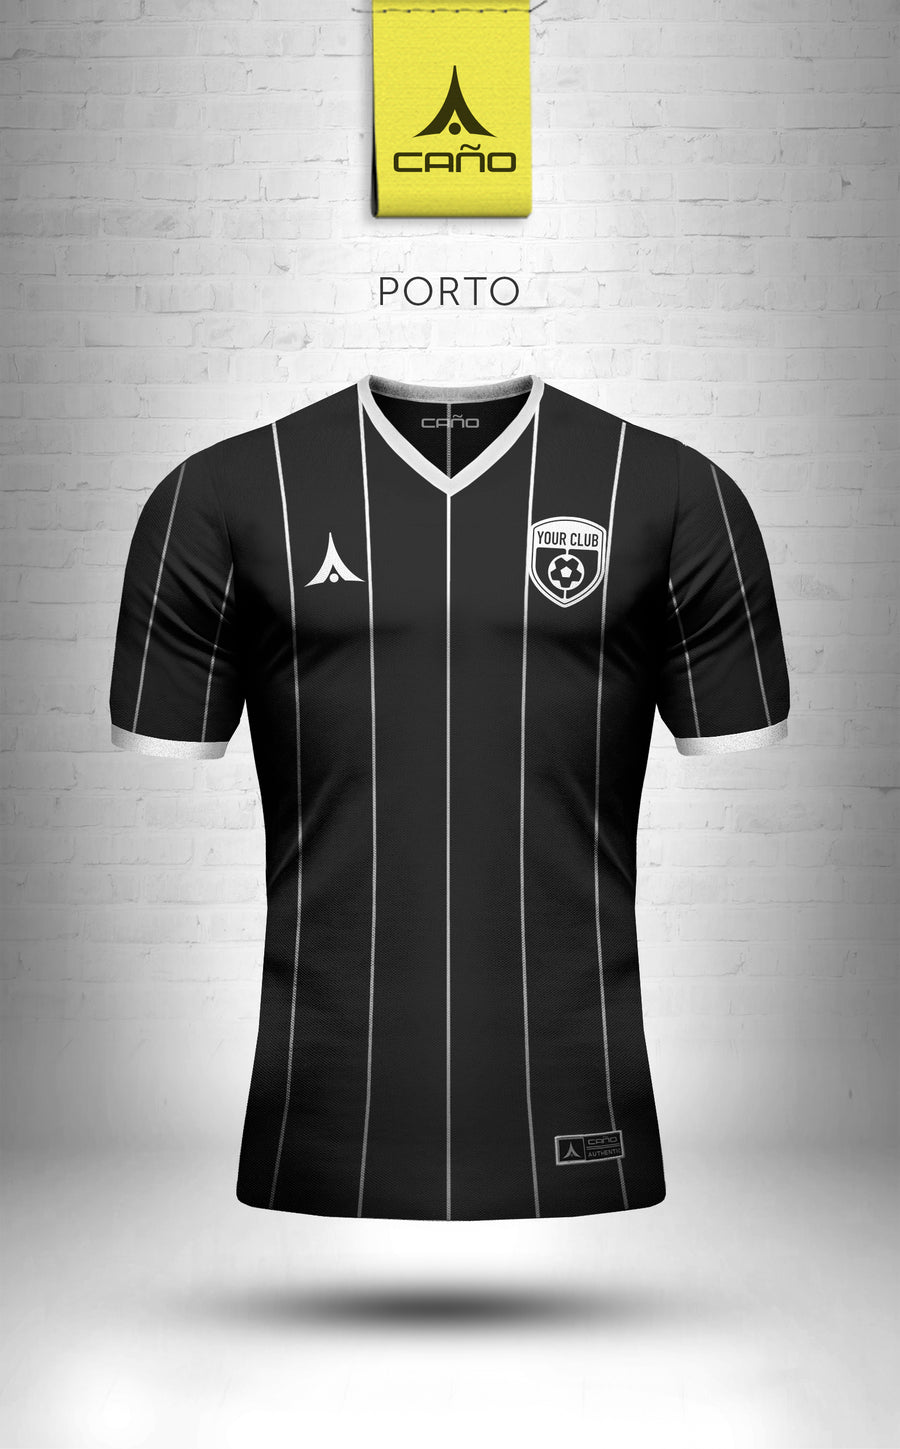 Porto in black/white